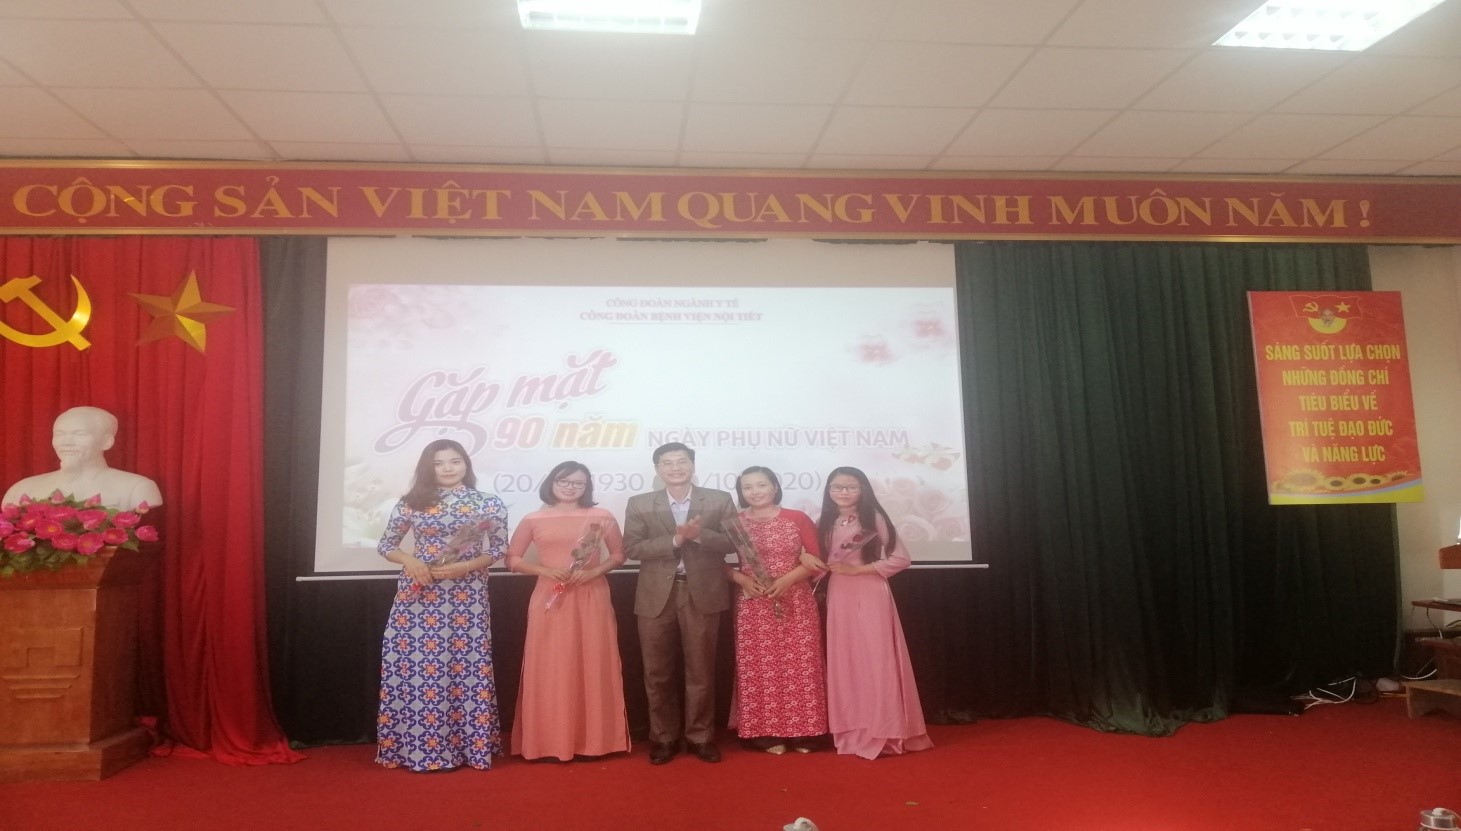 Bệnh viện Nội Tiết tỉnh Bắc Giang kỷ niệm 90 năm ngày thành lập Hội Liên hiệp Phụ nữ Việt Nam tại Bệnh viện Nội Tiết tỉnh Bắc Giang